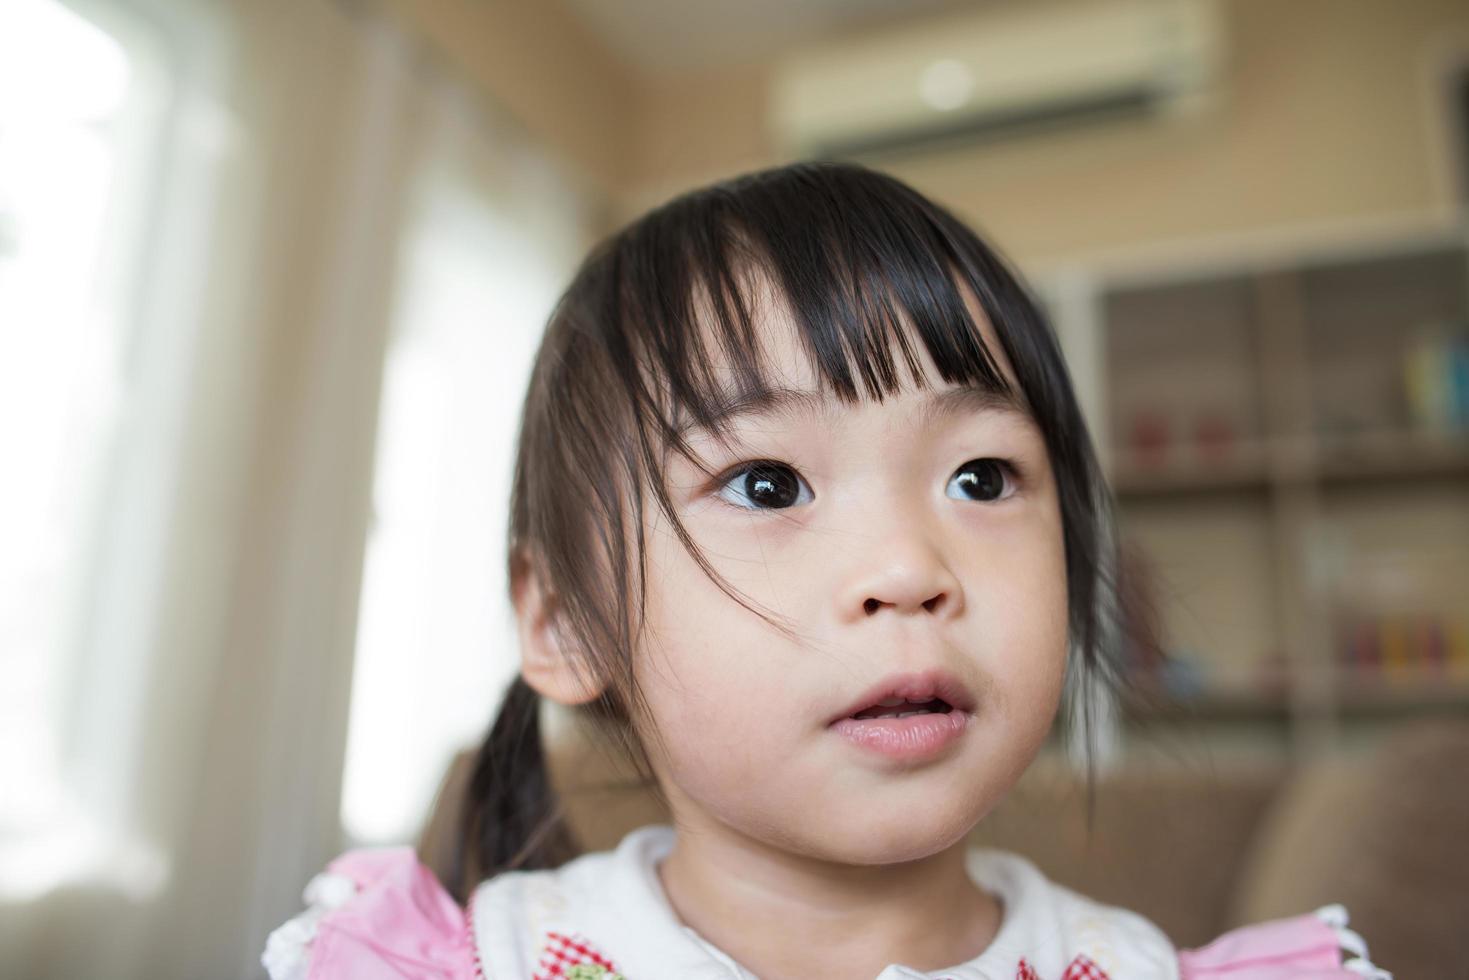 Portrait d'une petite fille asiatique jouant dans sa maison photo